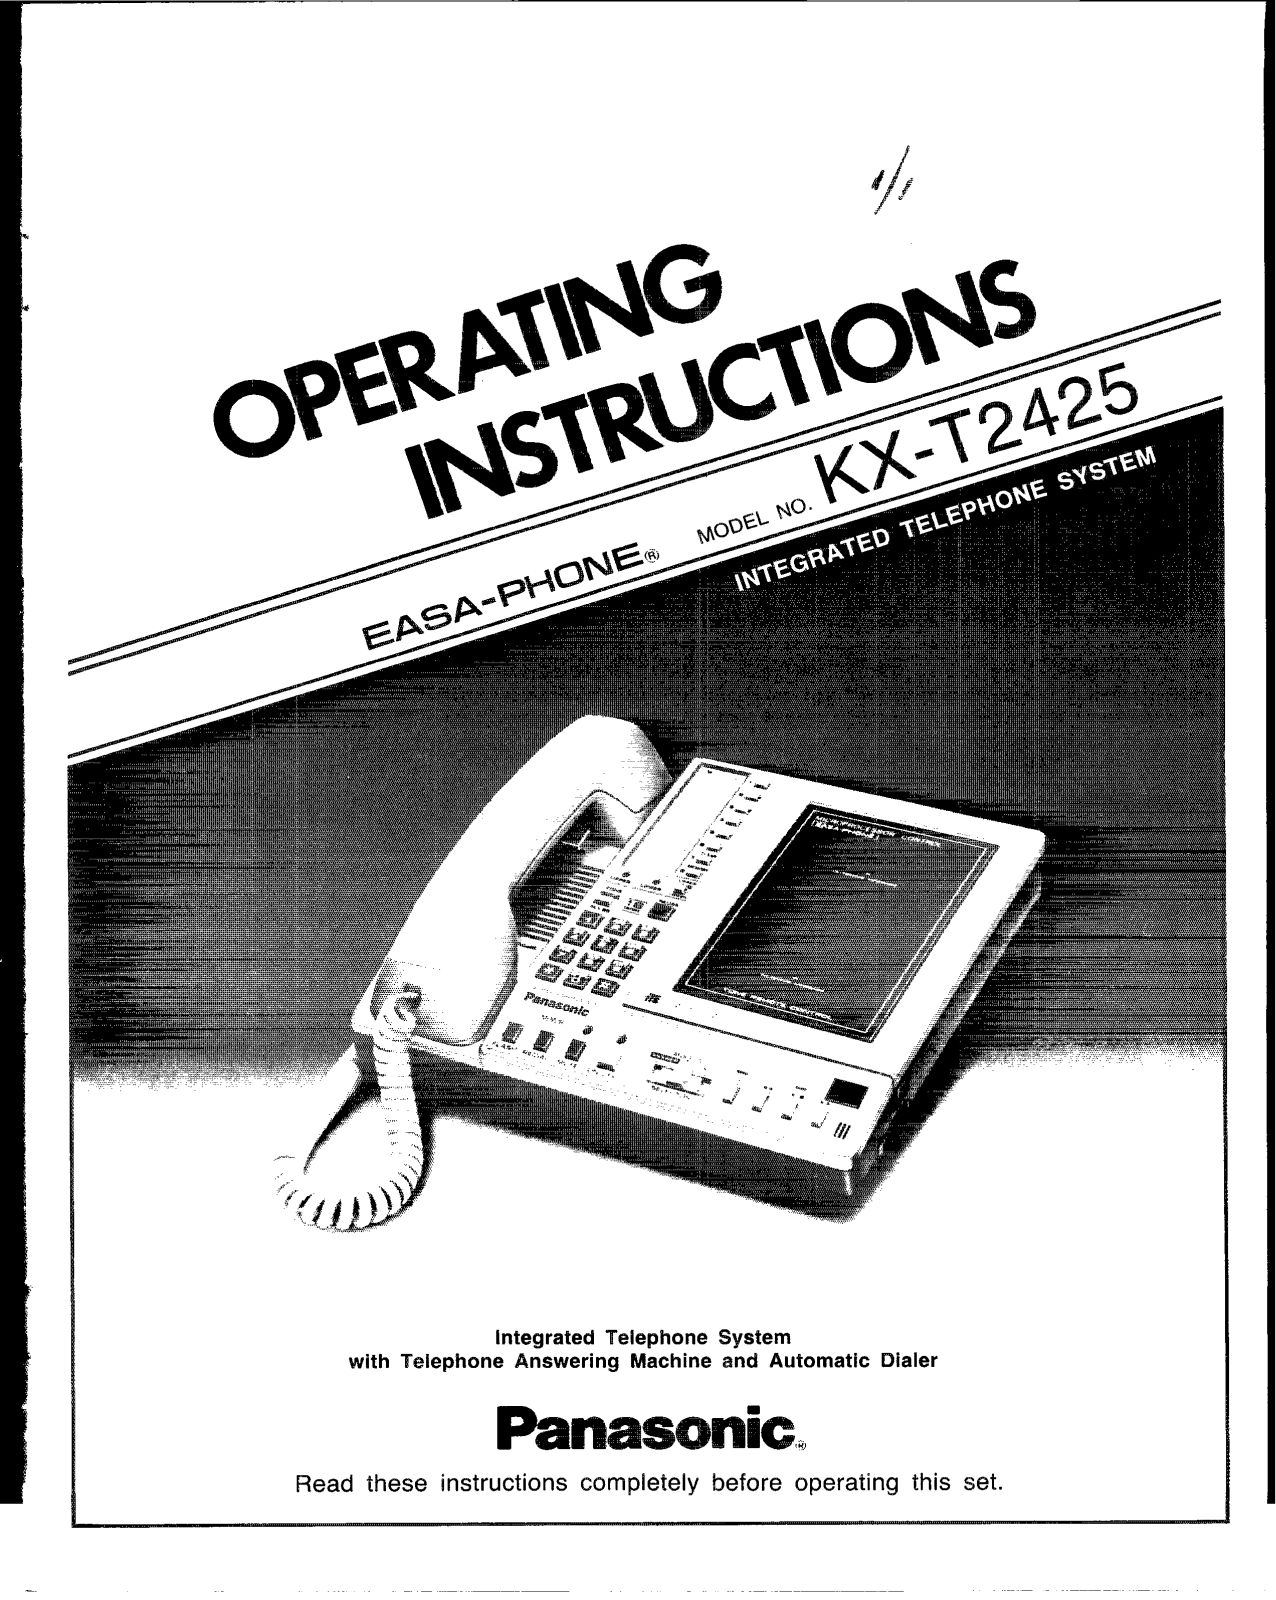 Panasonic kx-t2425 Operation Manual